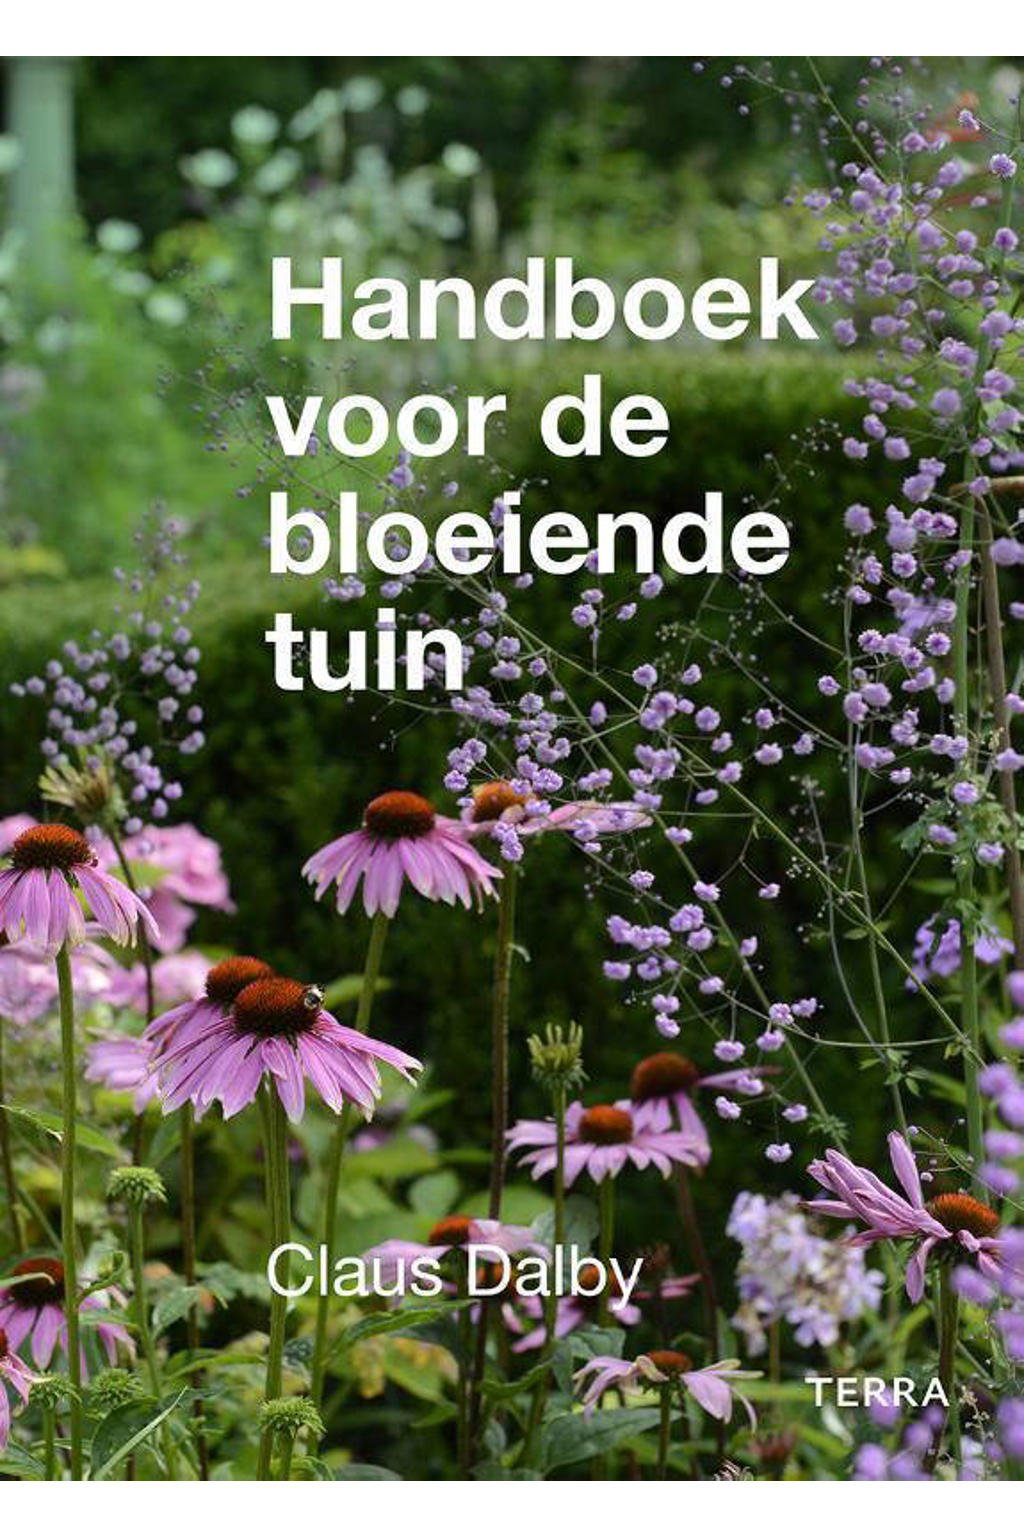 Handboek voor de bloeiende tuin - Claus Dalby